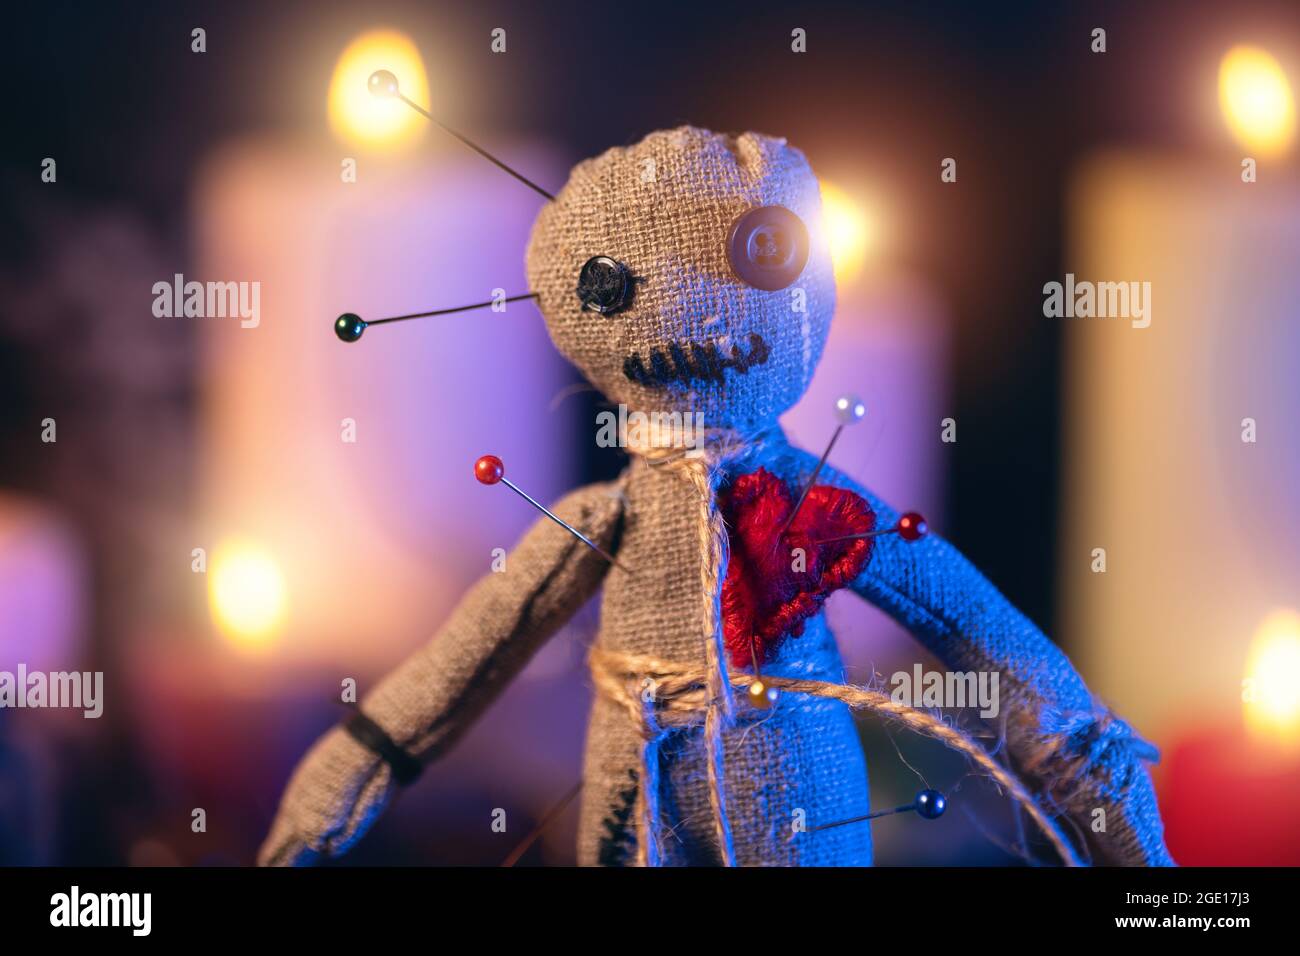 Voodoo bambola chiodata con aghi con cuore piercato rosso strag sullo sfondo di candele brucianti. Rituale esoterico magico e inquietante. Foto Stock